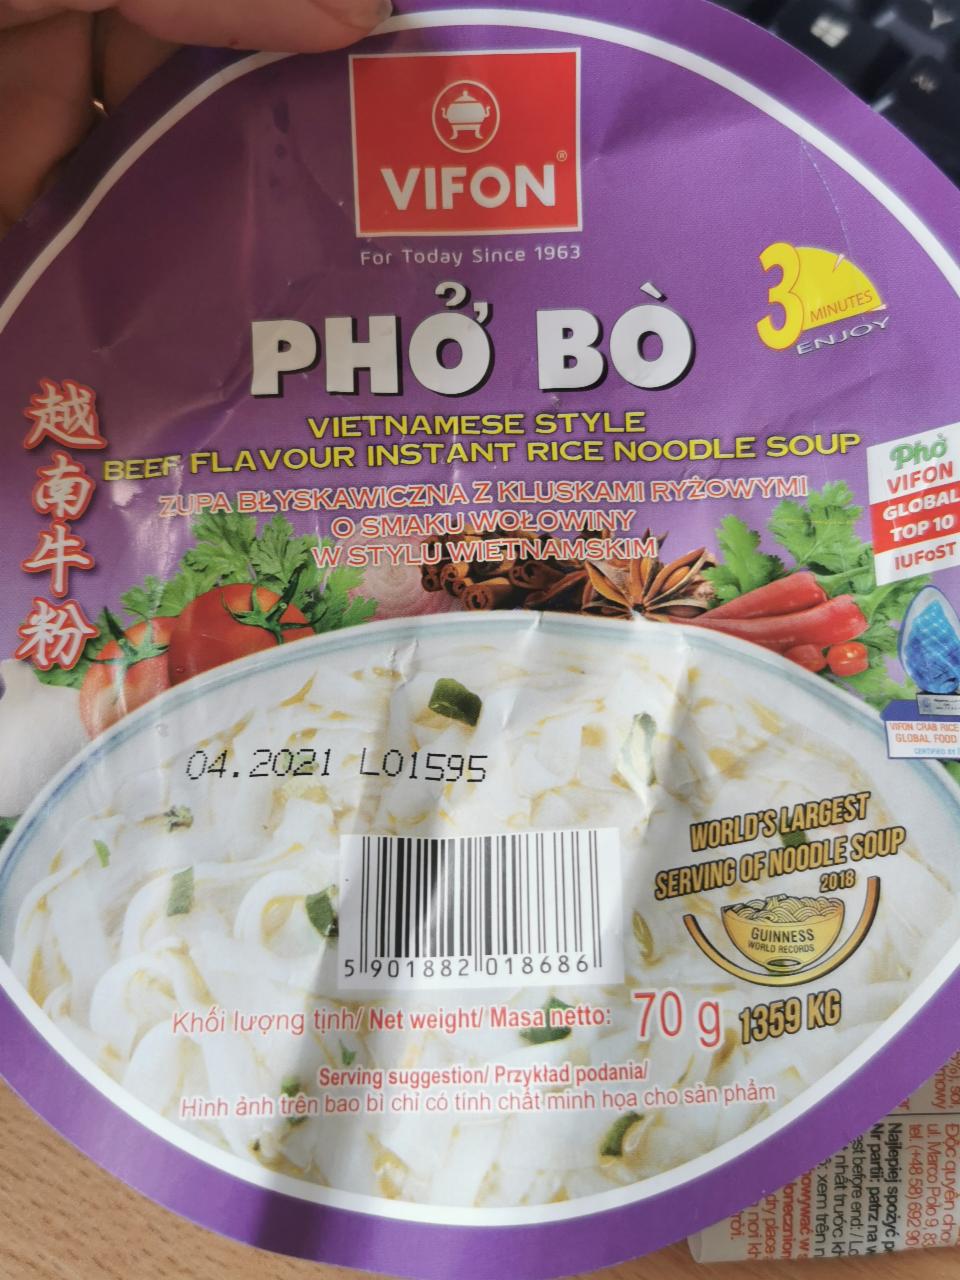 Fotografie - Pho Bo Vietnamese Style Beef Flavour Instant Rice Noodle Soup Vifon